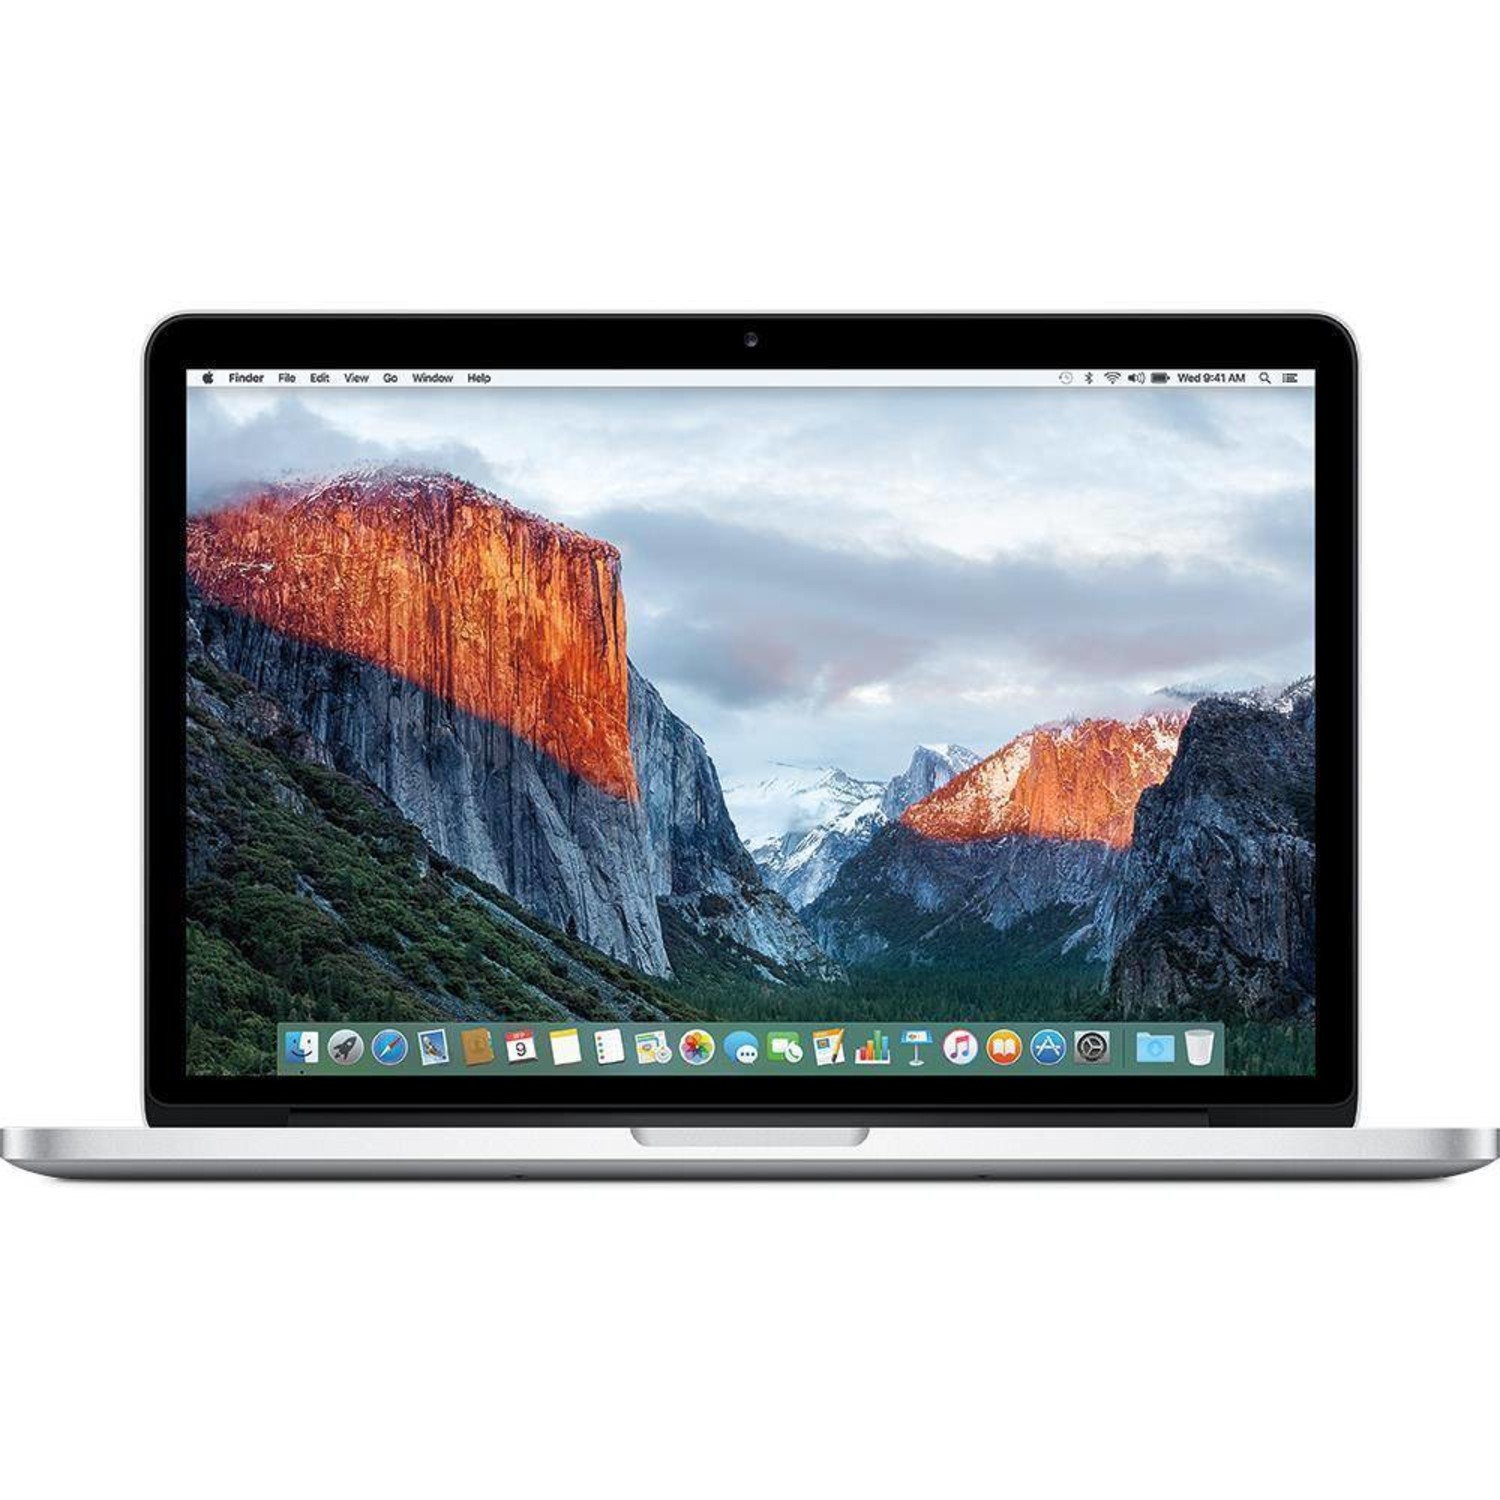 Refurbished MacBook Pro Retina 13 inch kopen? | theifactory.nl ...